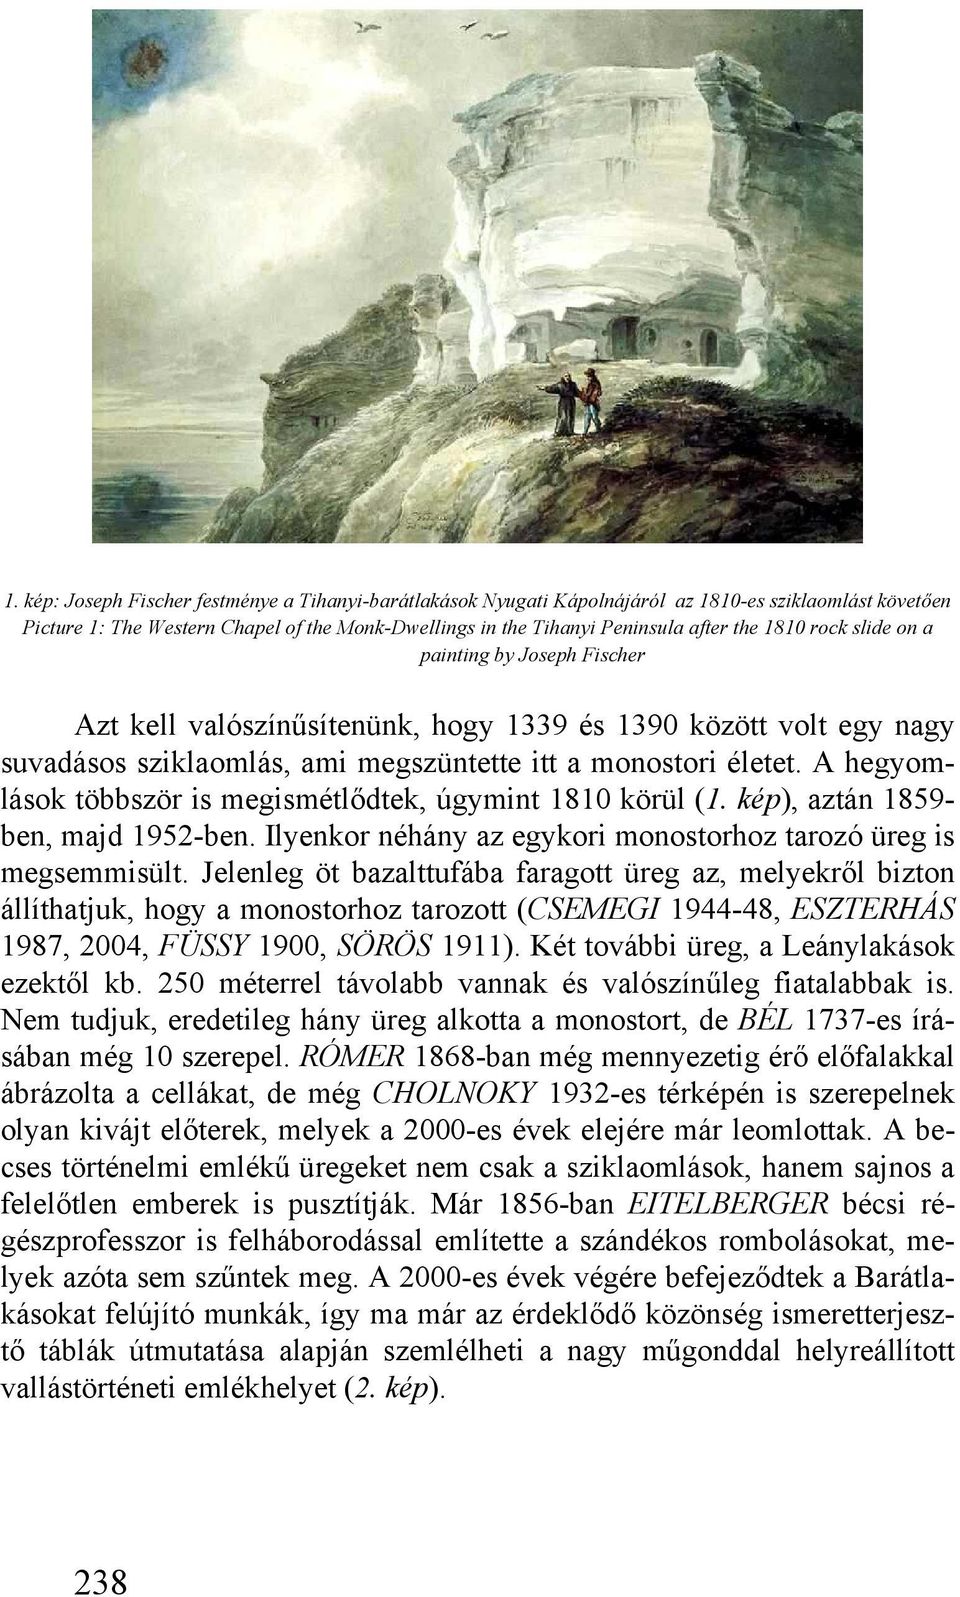 A hegyomlások többször is megismétlődtek, úgymint 1810 körül (1. kép), aztán 1859- ben, majd 1952-ben. Ilyenkor néhány az egykori monostorhoz tarozó üreg is megsemmisült.